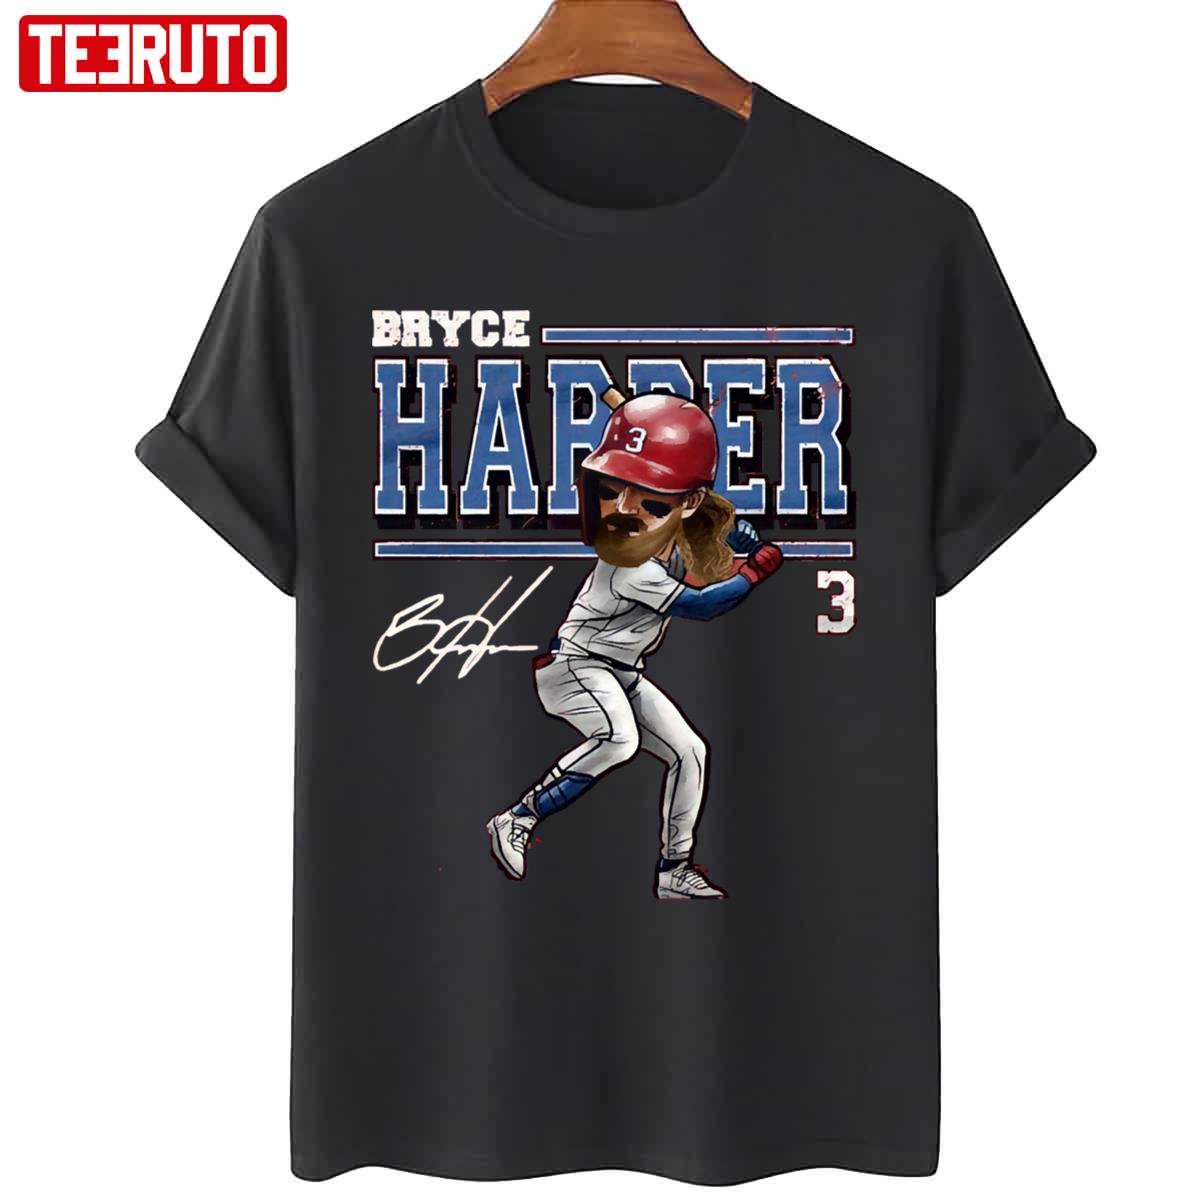 Bryce Harper Carton Vintage Unisex T-Shirt